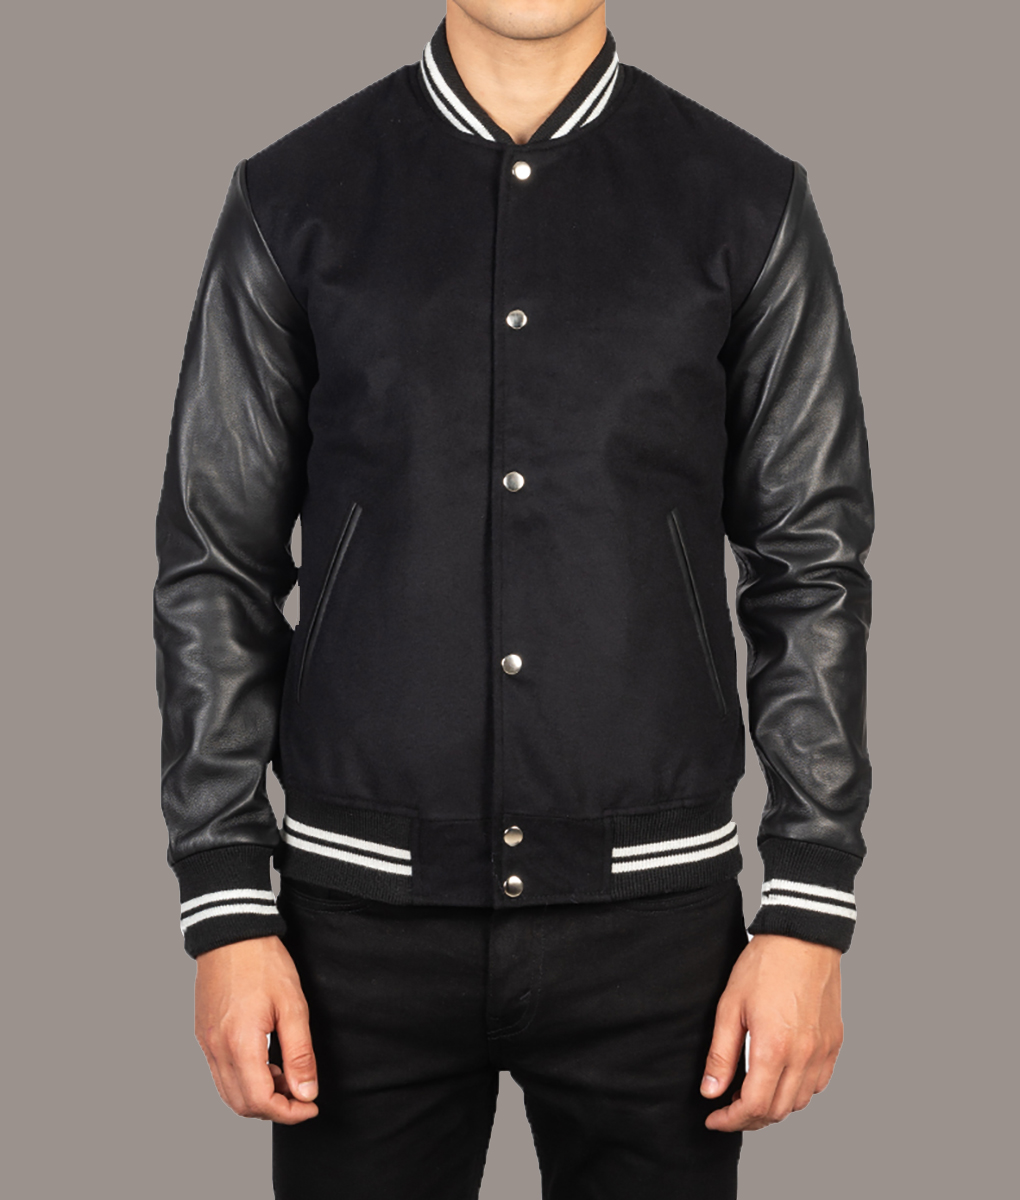 Ryan Gosling Black Varsity Jacket (6)